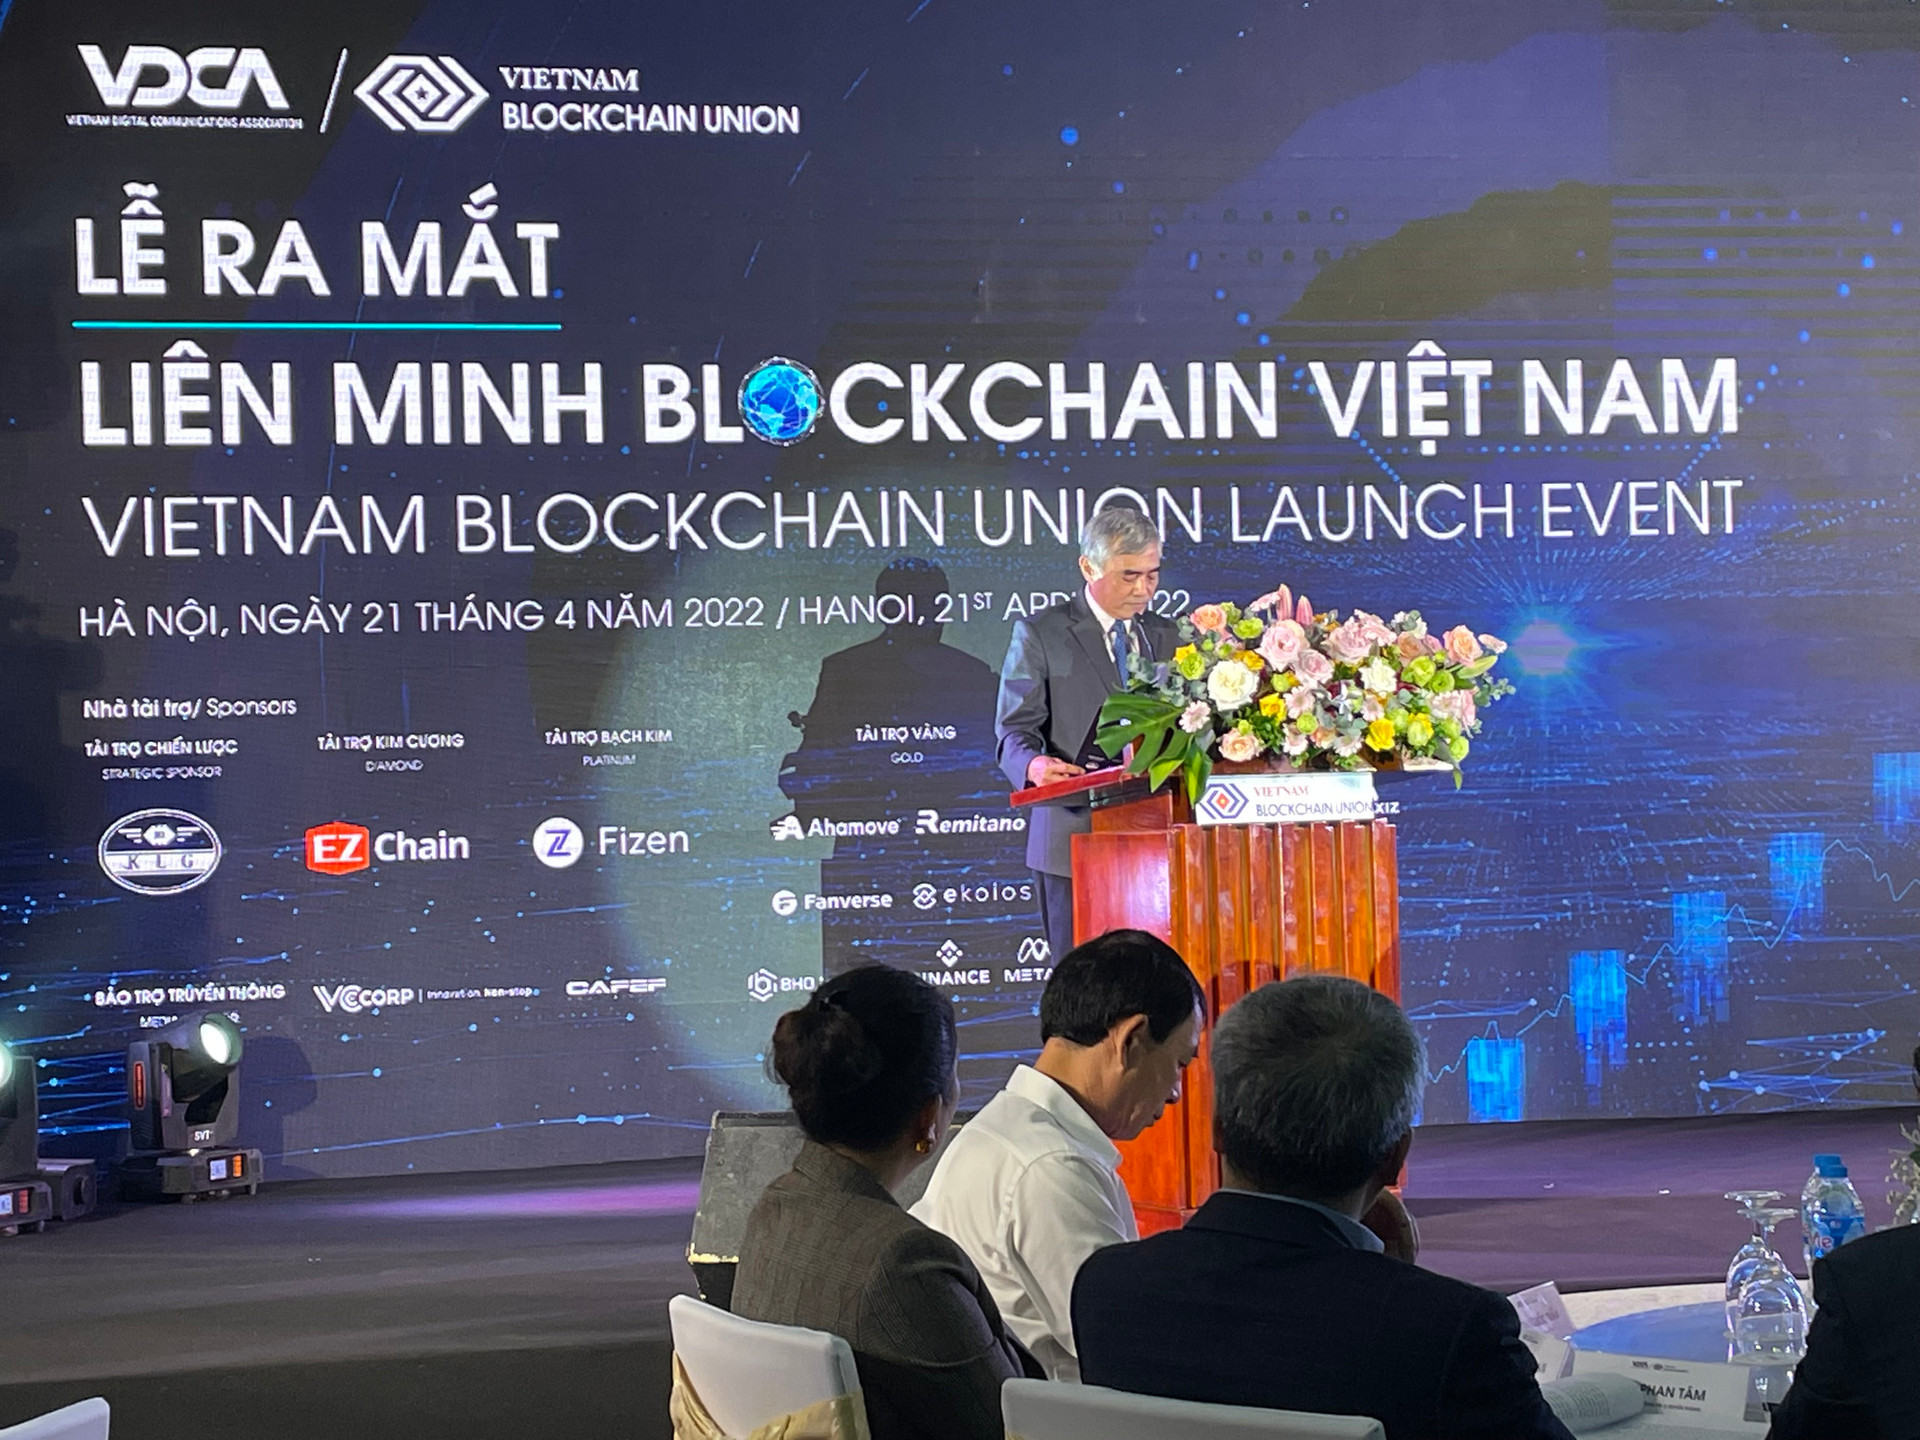 Ra mắt Liên minh blockchain: Mở ra một bước tiến mới tại Việt Nam - Ảnh 2.